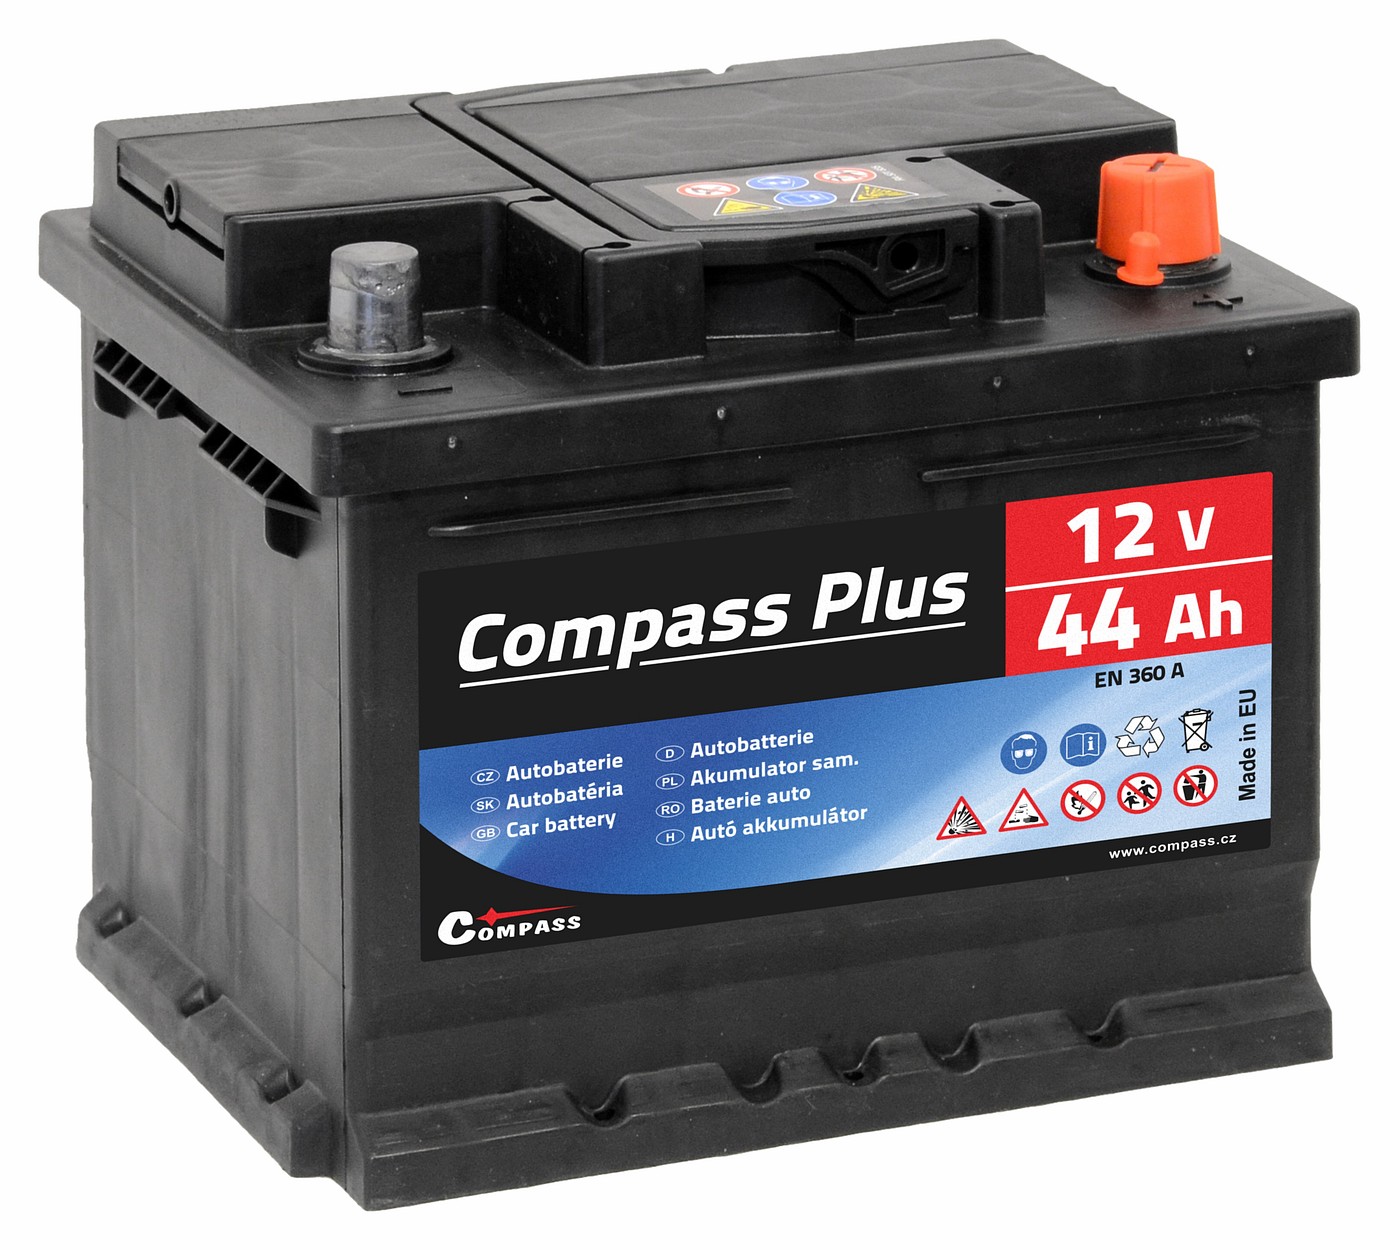 Autobaterie COMPASS PLUS 12V 44Ah 360A Compass AM27561 + Dárek, servis bez starostí v hodnotě 300Kč